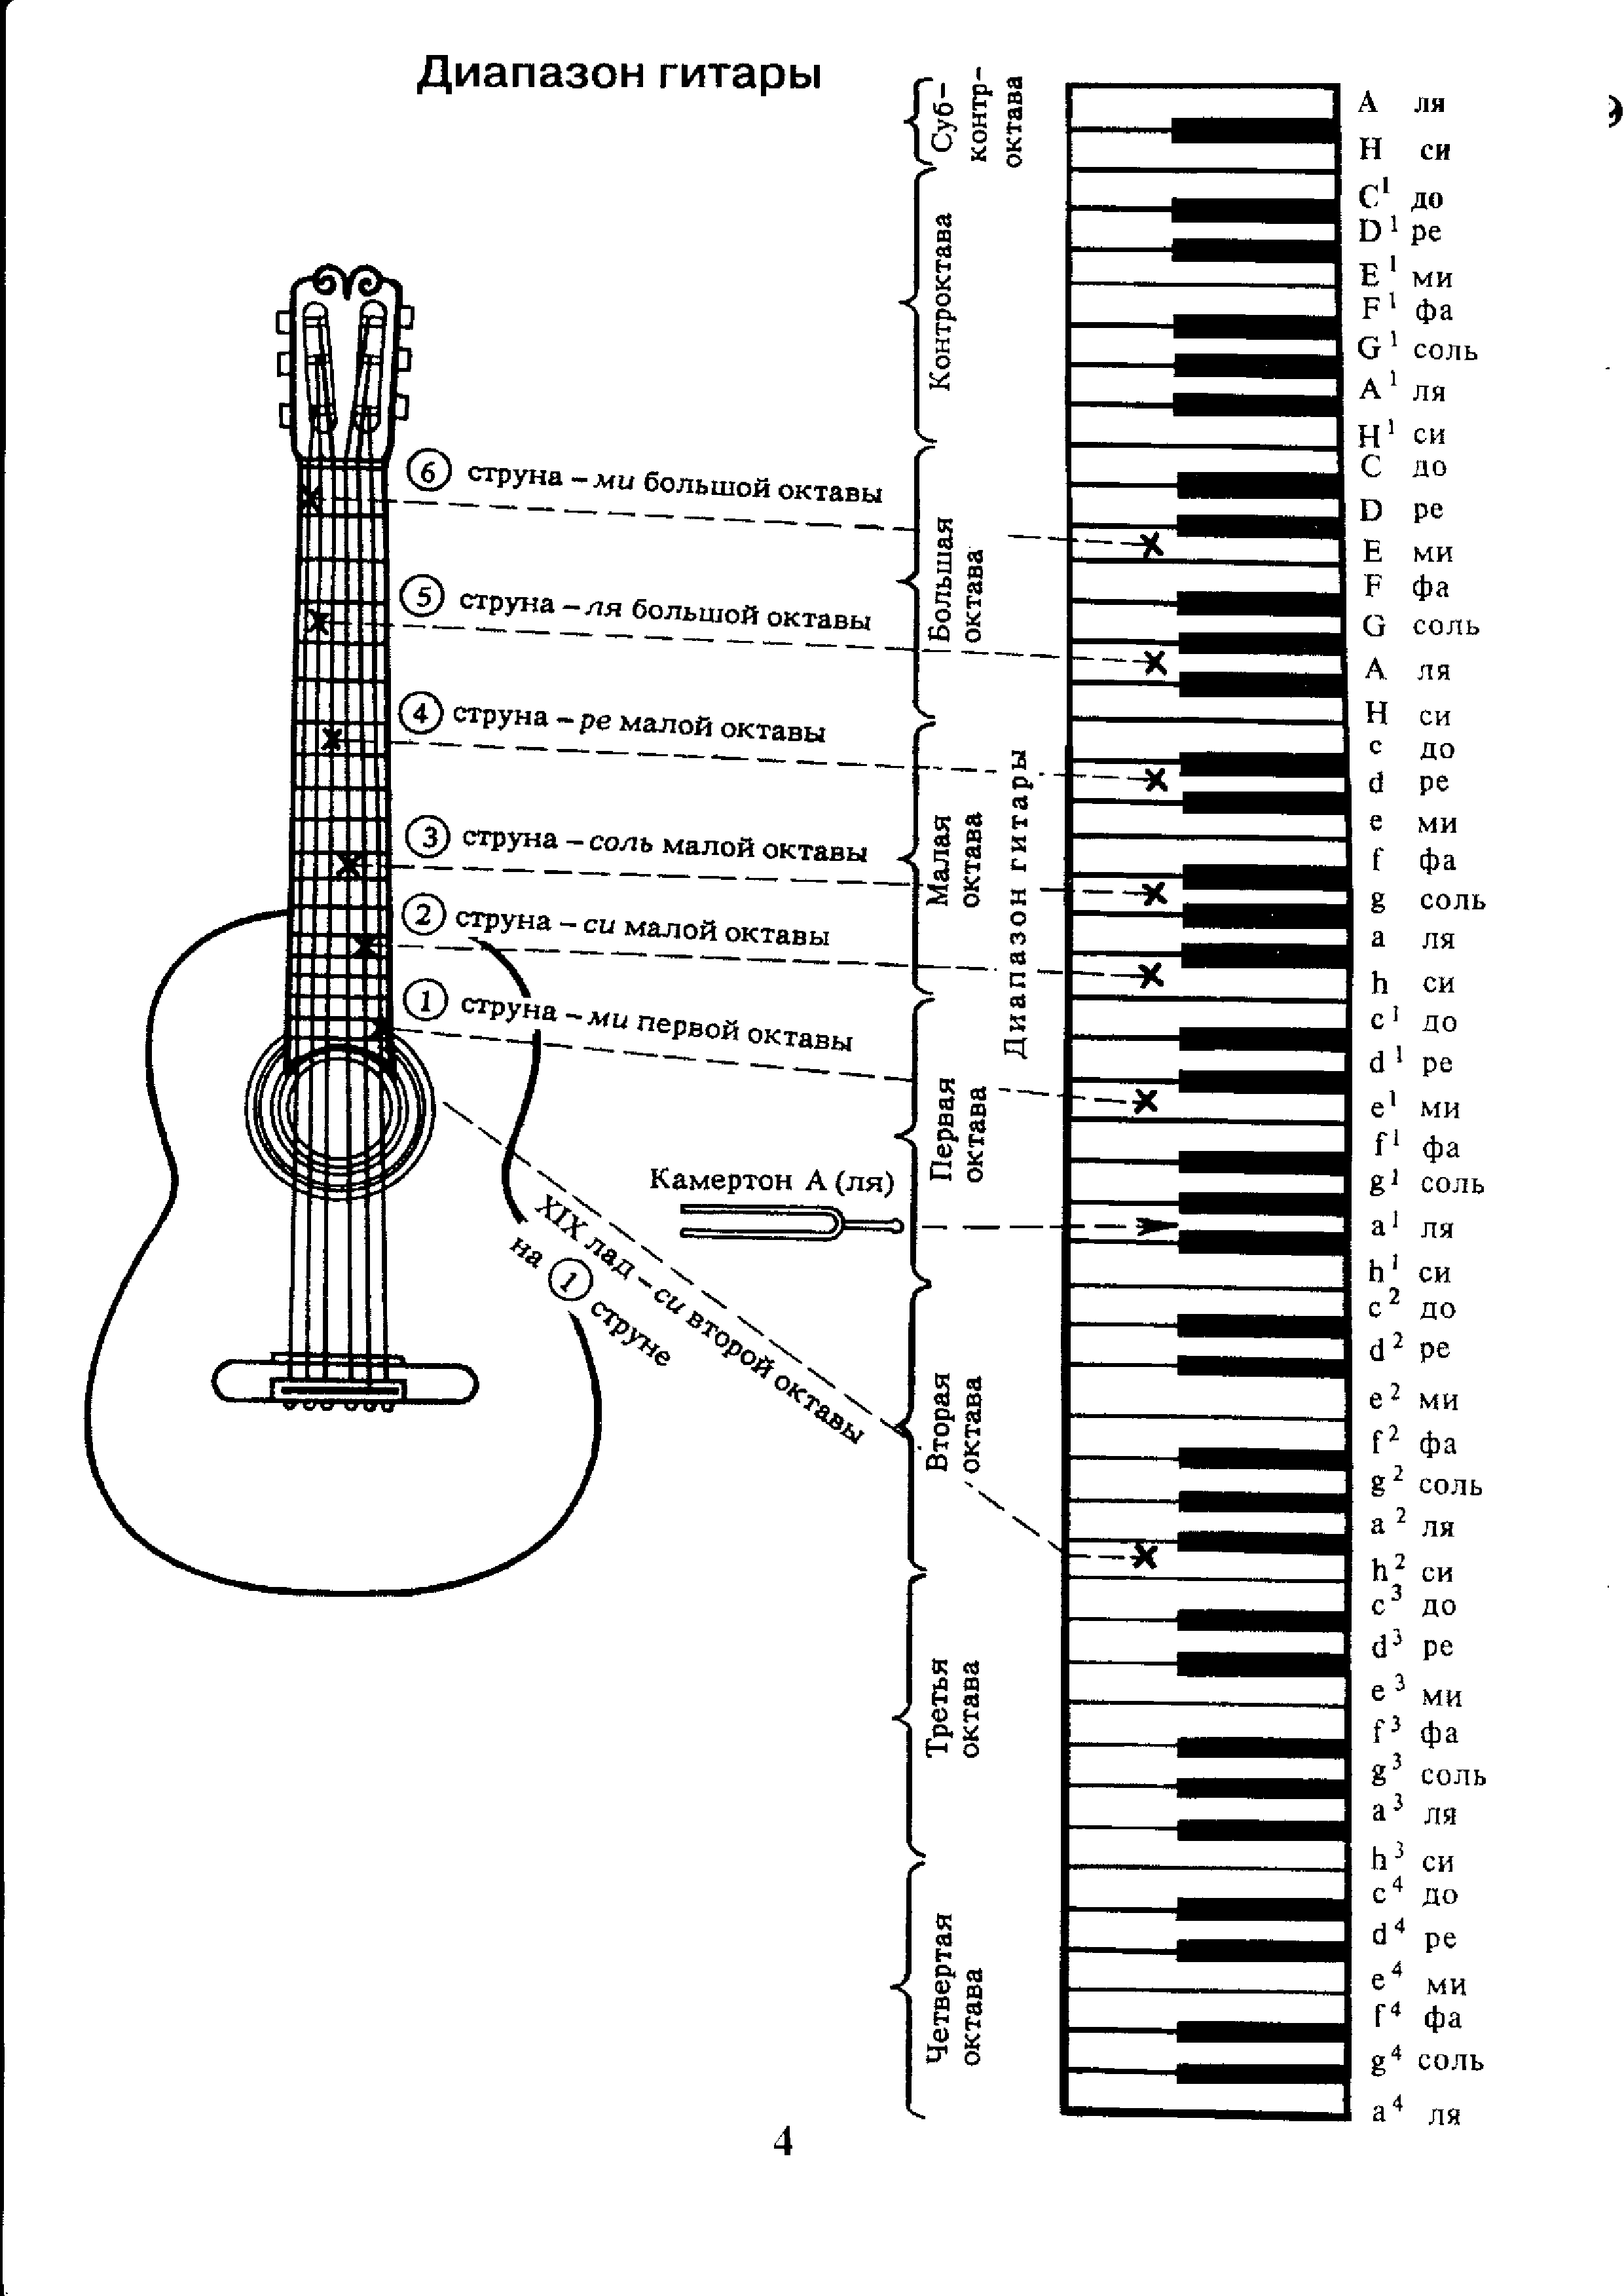 Звук настройки струн. Аппликатура аккордов для гитары 6 струн для начинающих. Ноты на гитарном грифе 6 струнной. Лады на 6 струнной гитаре для начинающих. Схема гитары классической 6 струнной.